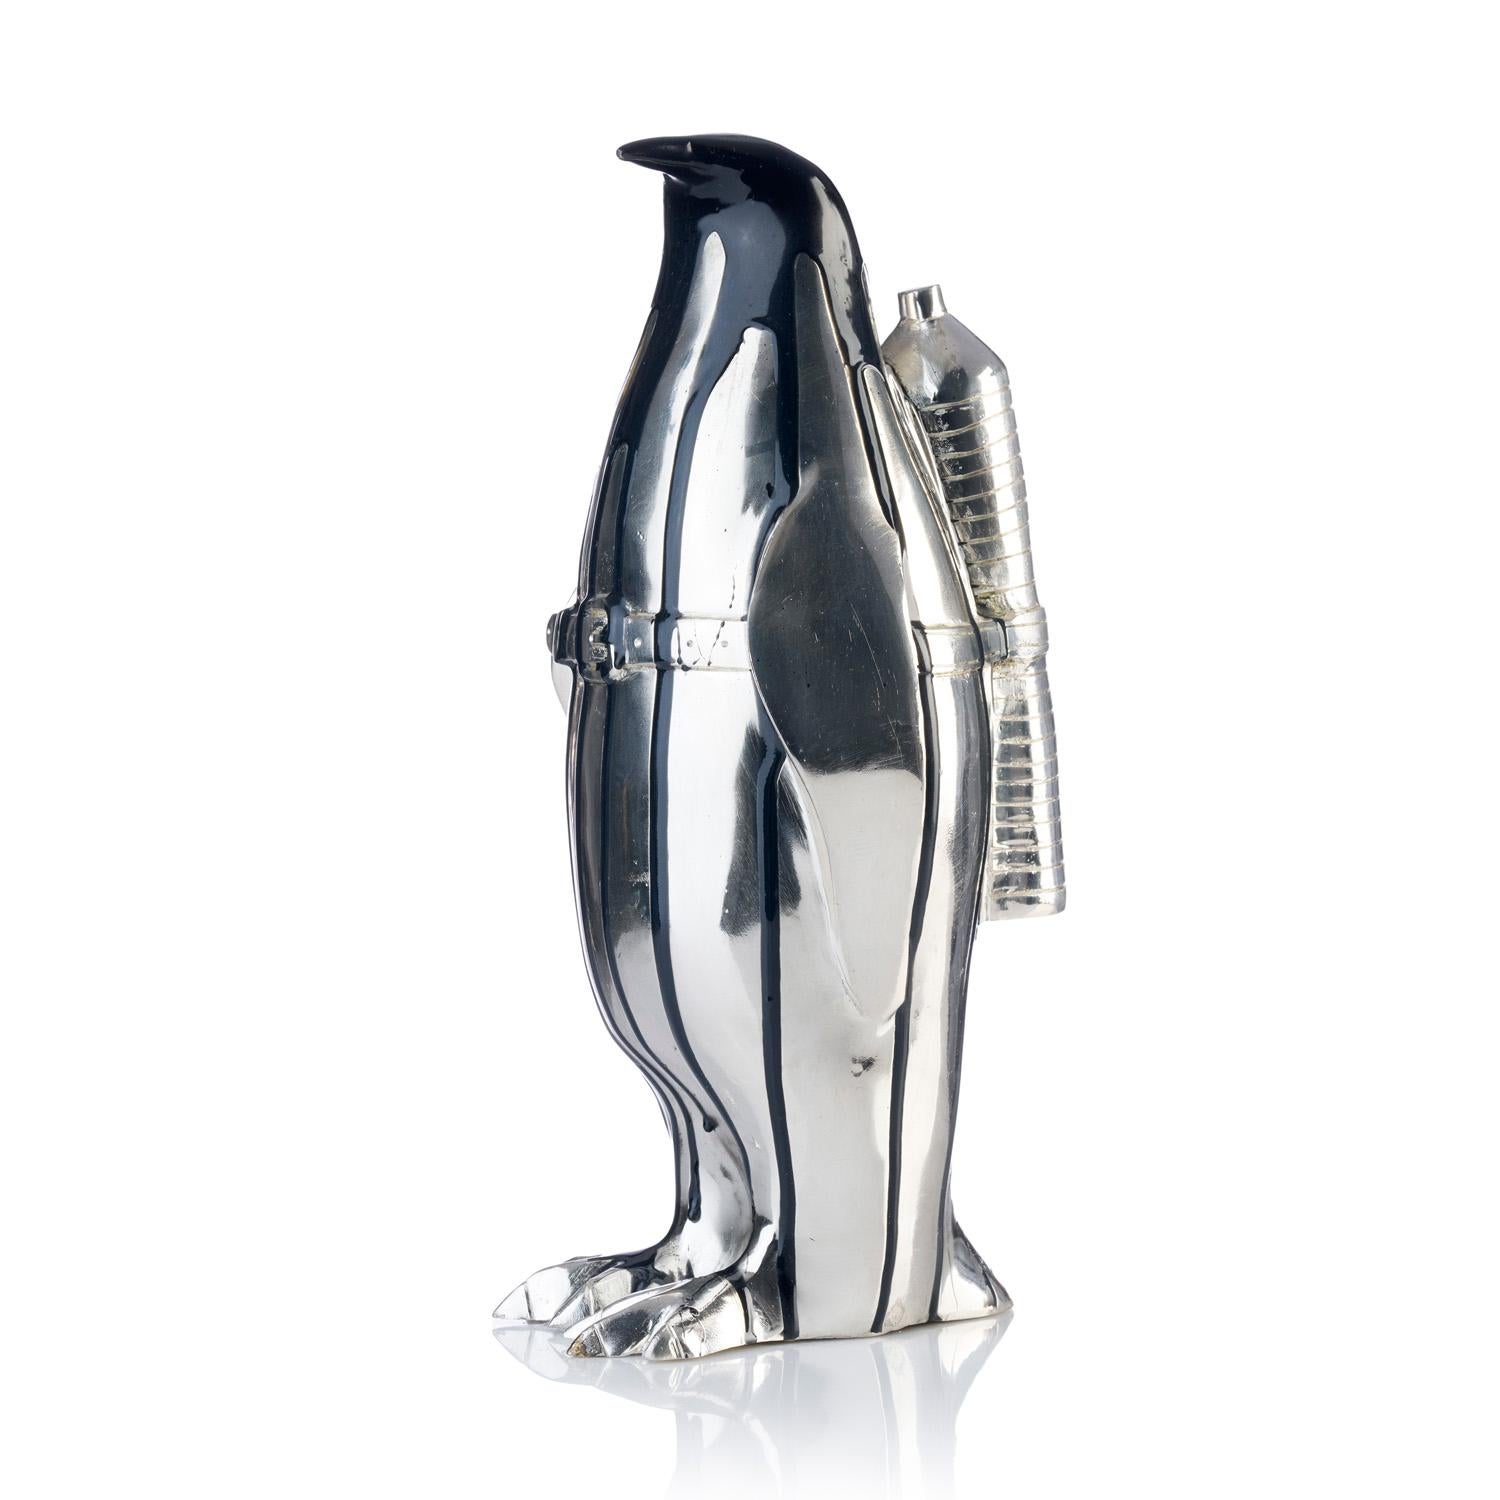 Pingouin cloné avec bouteille en plastique (noir)  - Or Figurative Sculpture par William Sweetlove